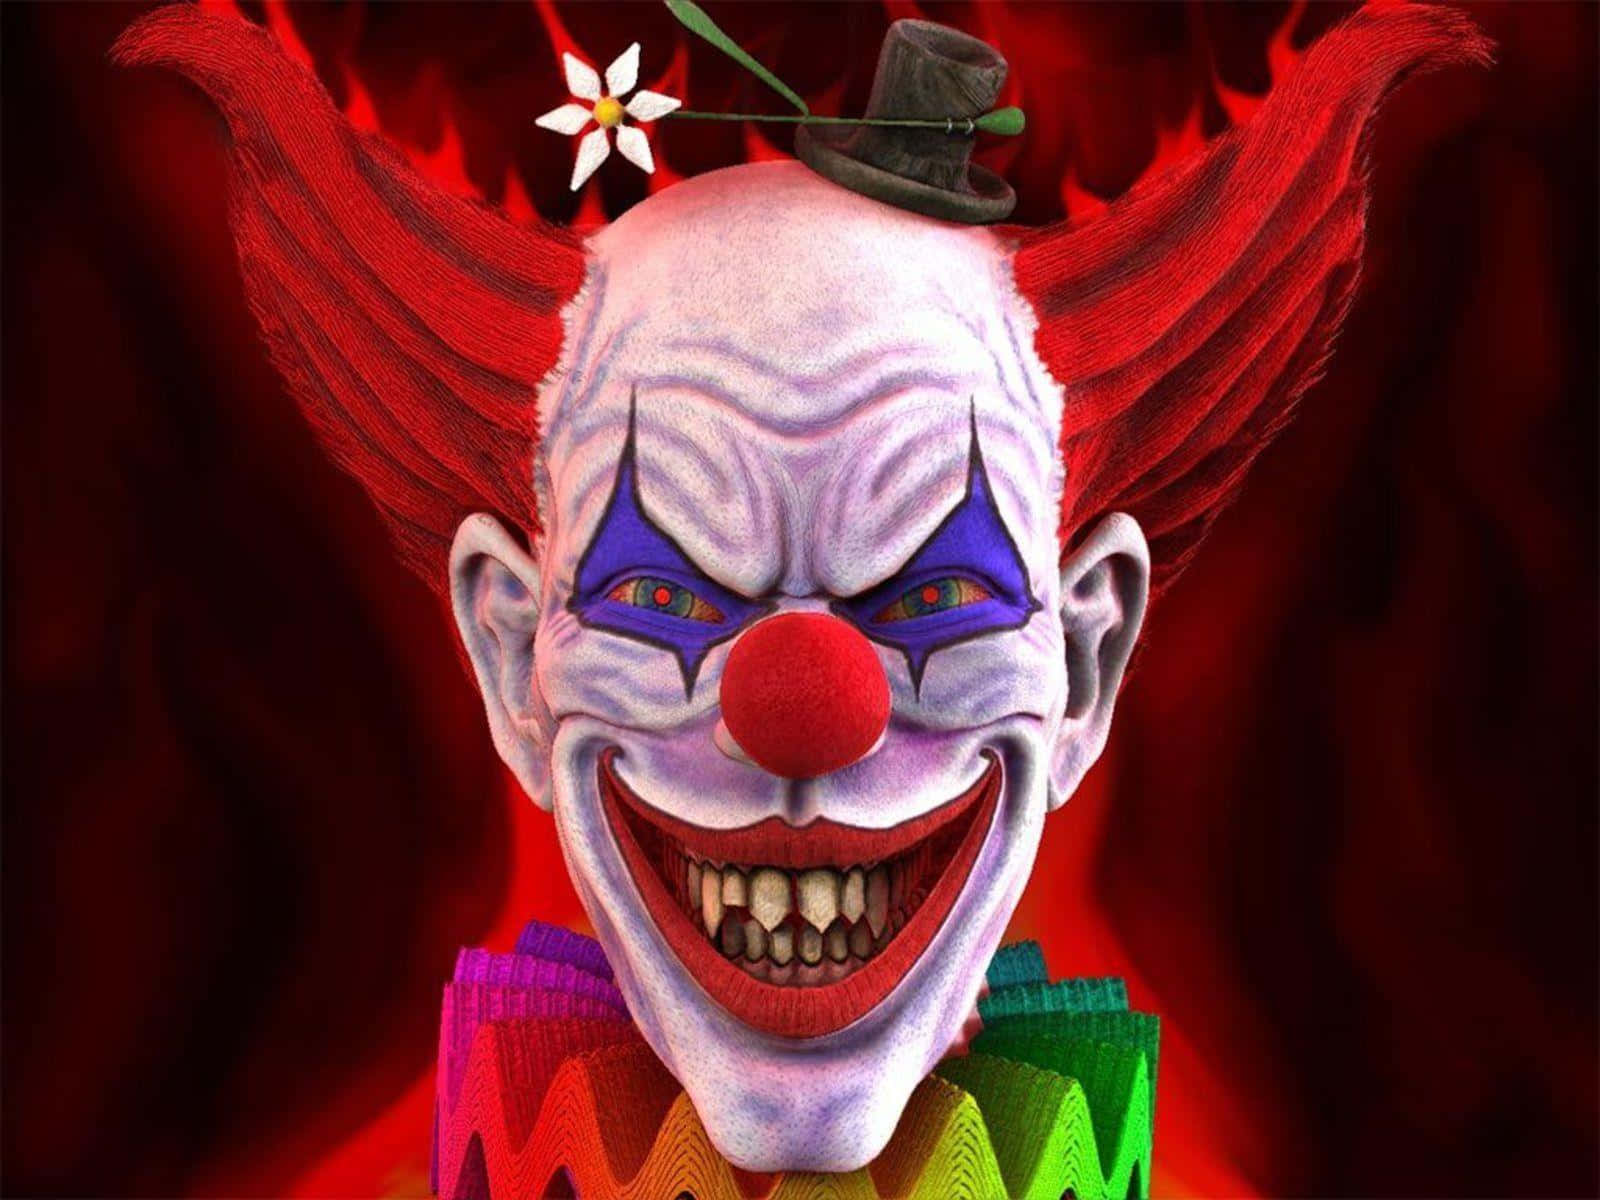 Clownals Hintergrundbild Mit Einer Auflösung Von 1600 X 1200